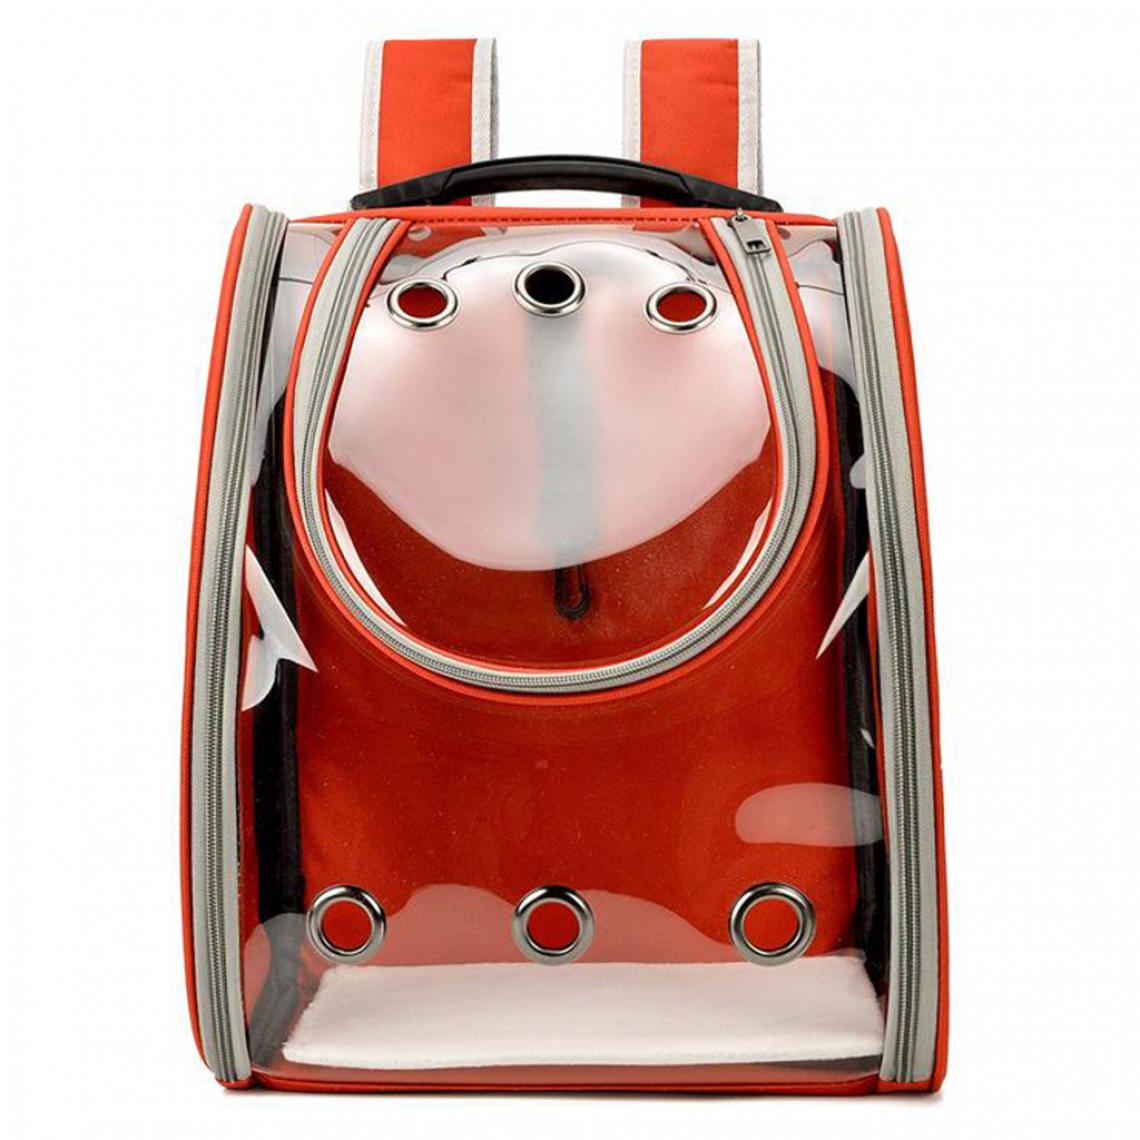 marque generique - Pet Cat Dog Carrier Bag Sac à Dos Travel Kennel Handbag Puppy Bag Crate Red - Equipement de transport pour chat